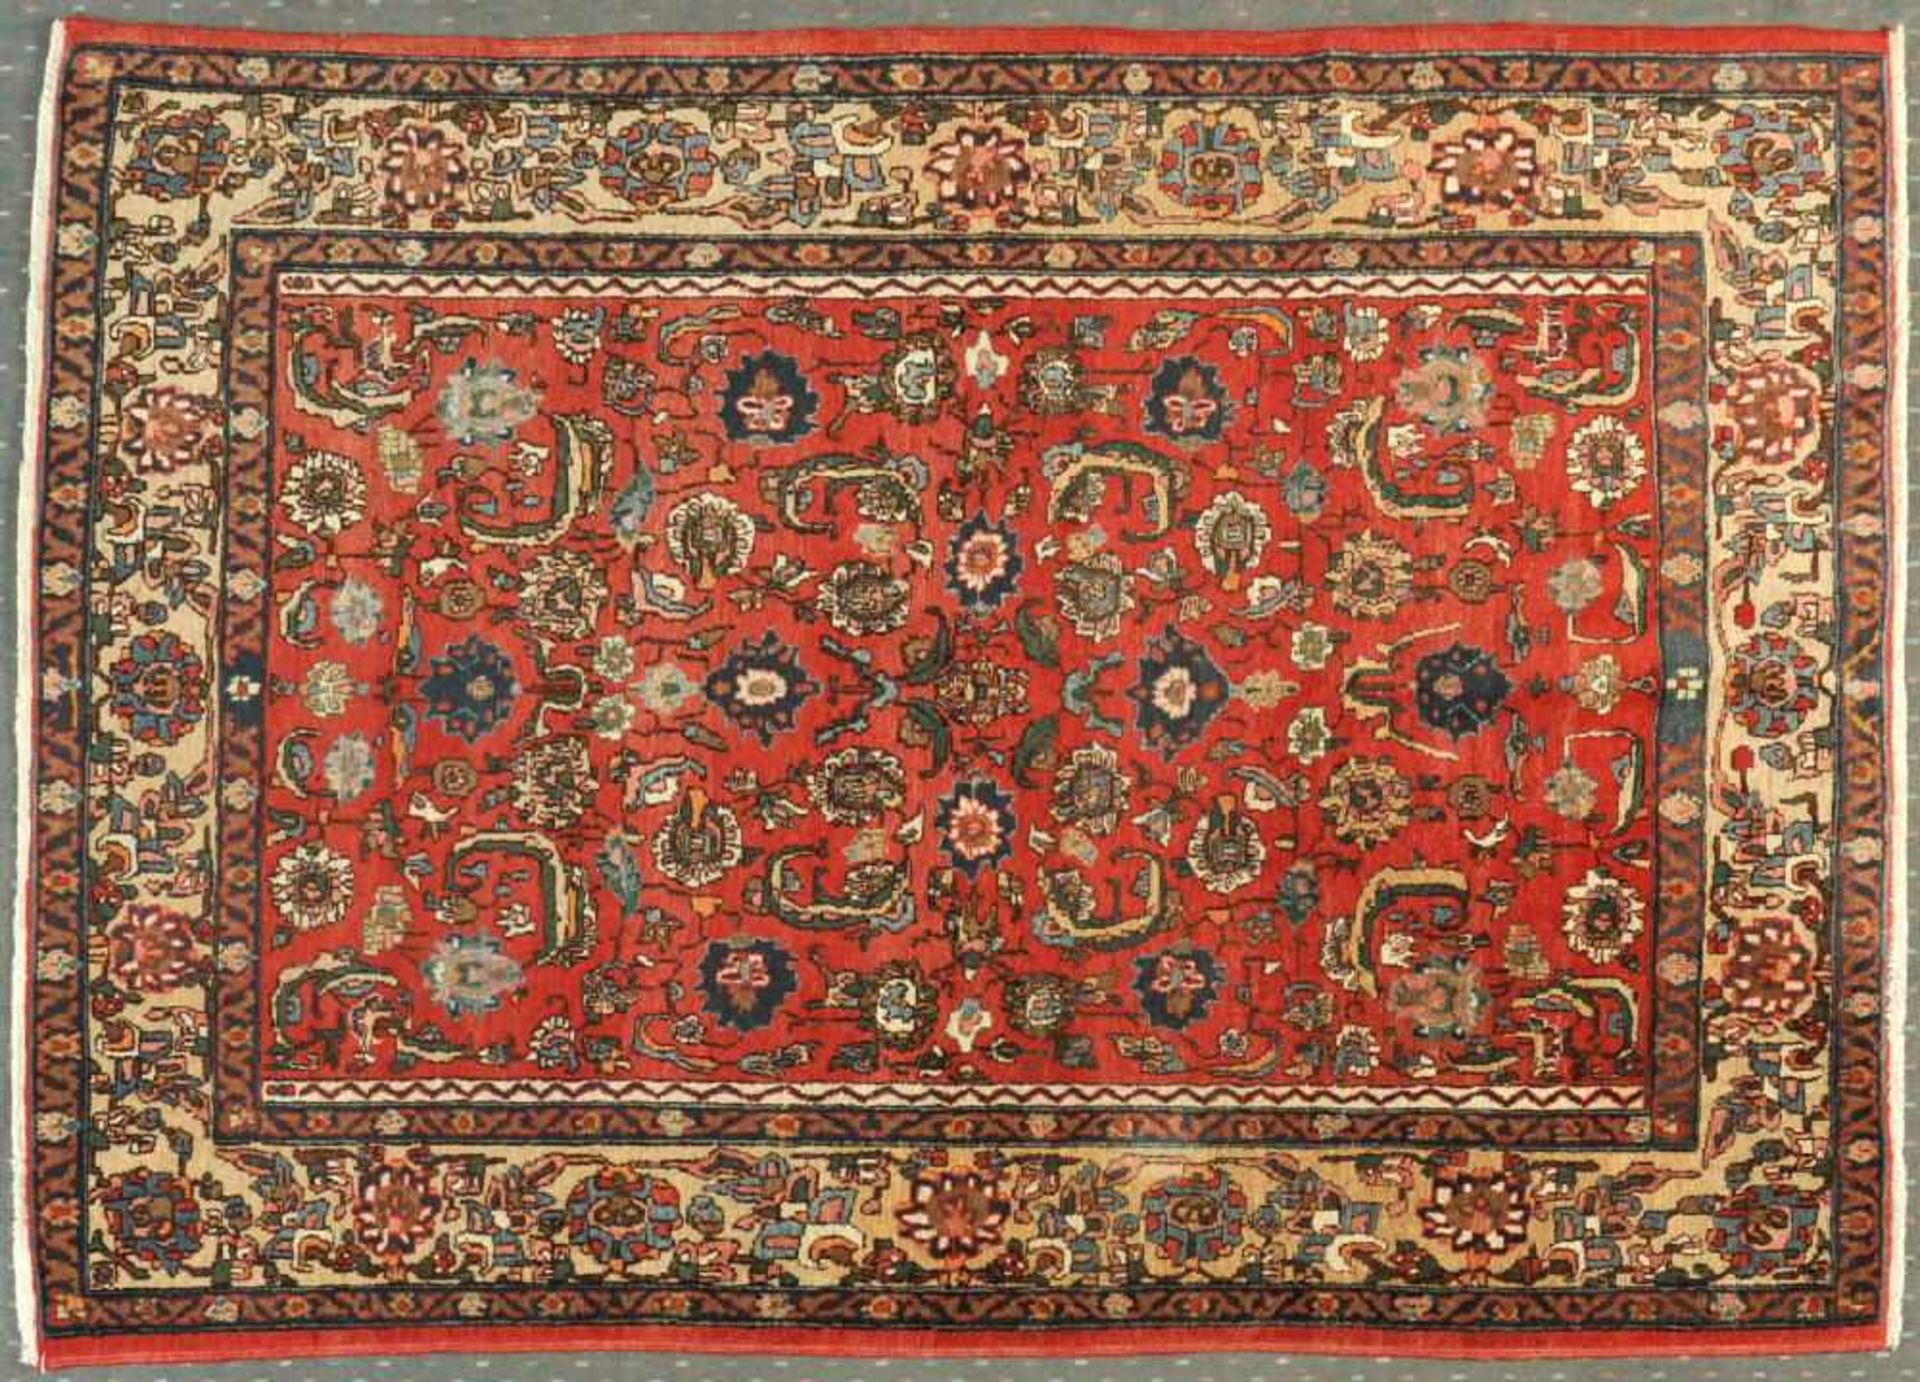 Isfahan, Persien 146 x 206 cmalt, Wolle, feine Knüpfung, rotgrundig, durchgemustert mit floralen